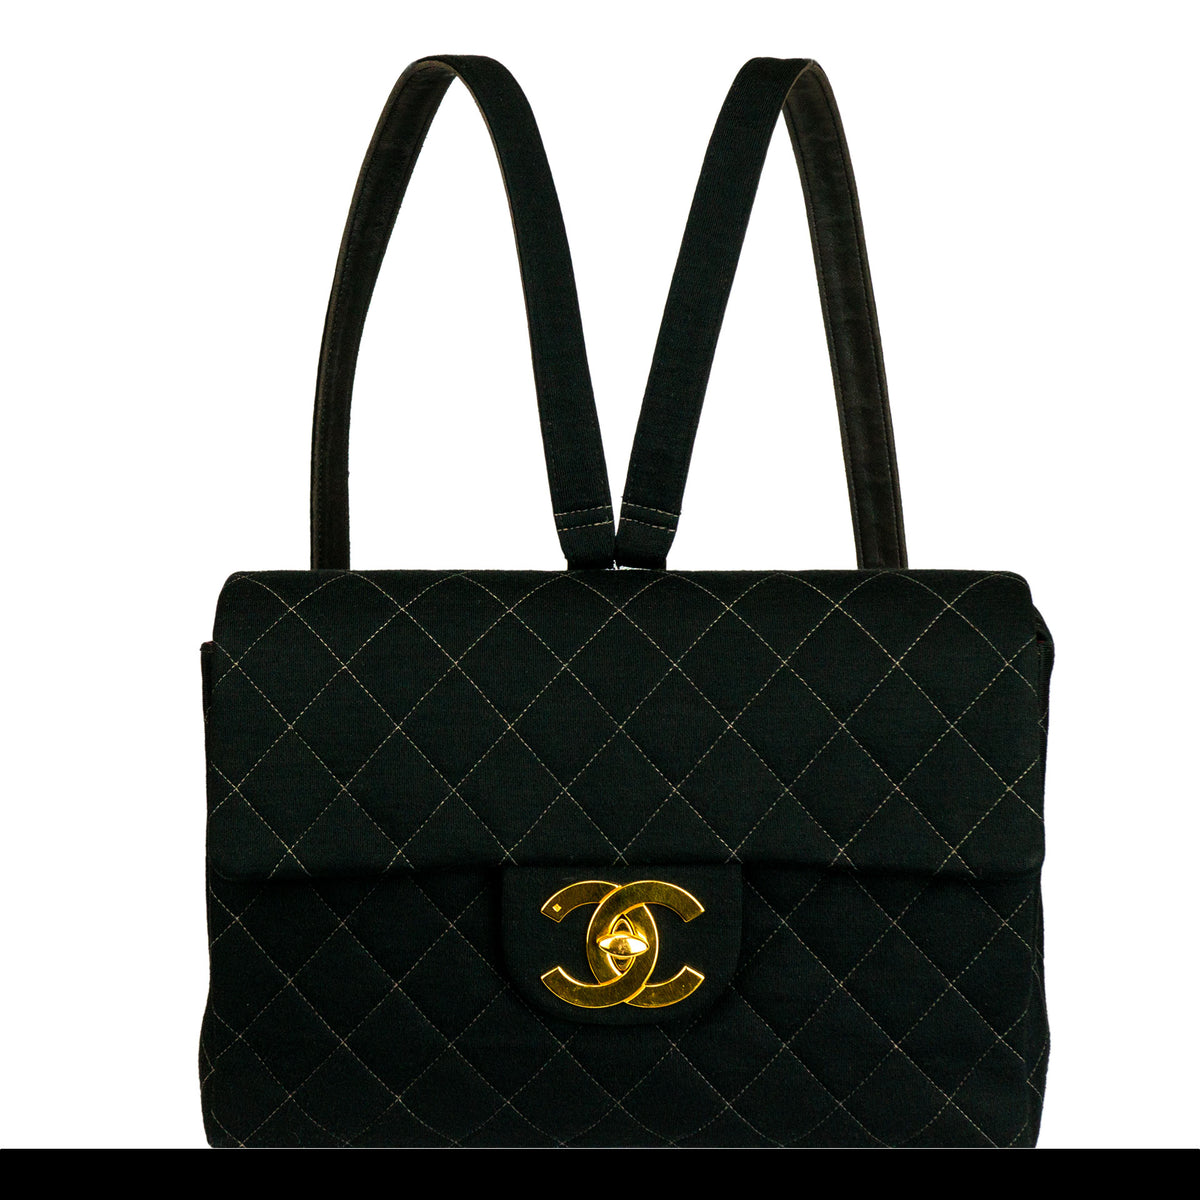 Vintage Chanel Backpacks - 73 For Sale on 1stDibs  chanel duma backpack,  chanel duma backpack caviar, chanel black leather backpack